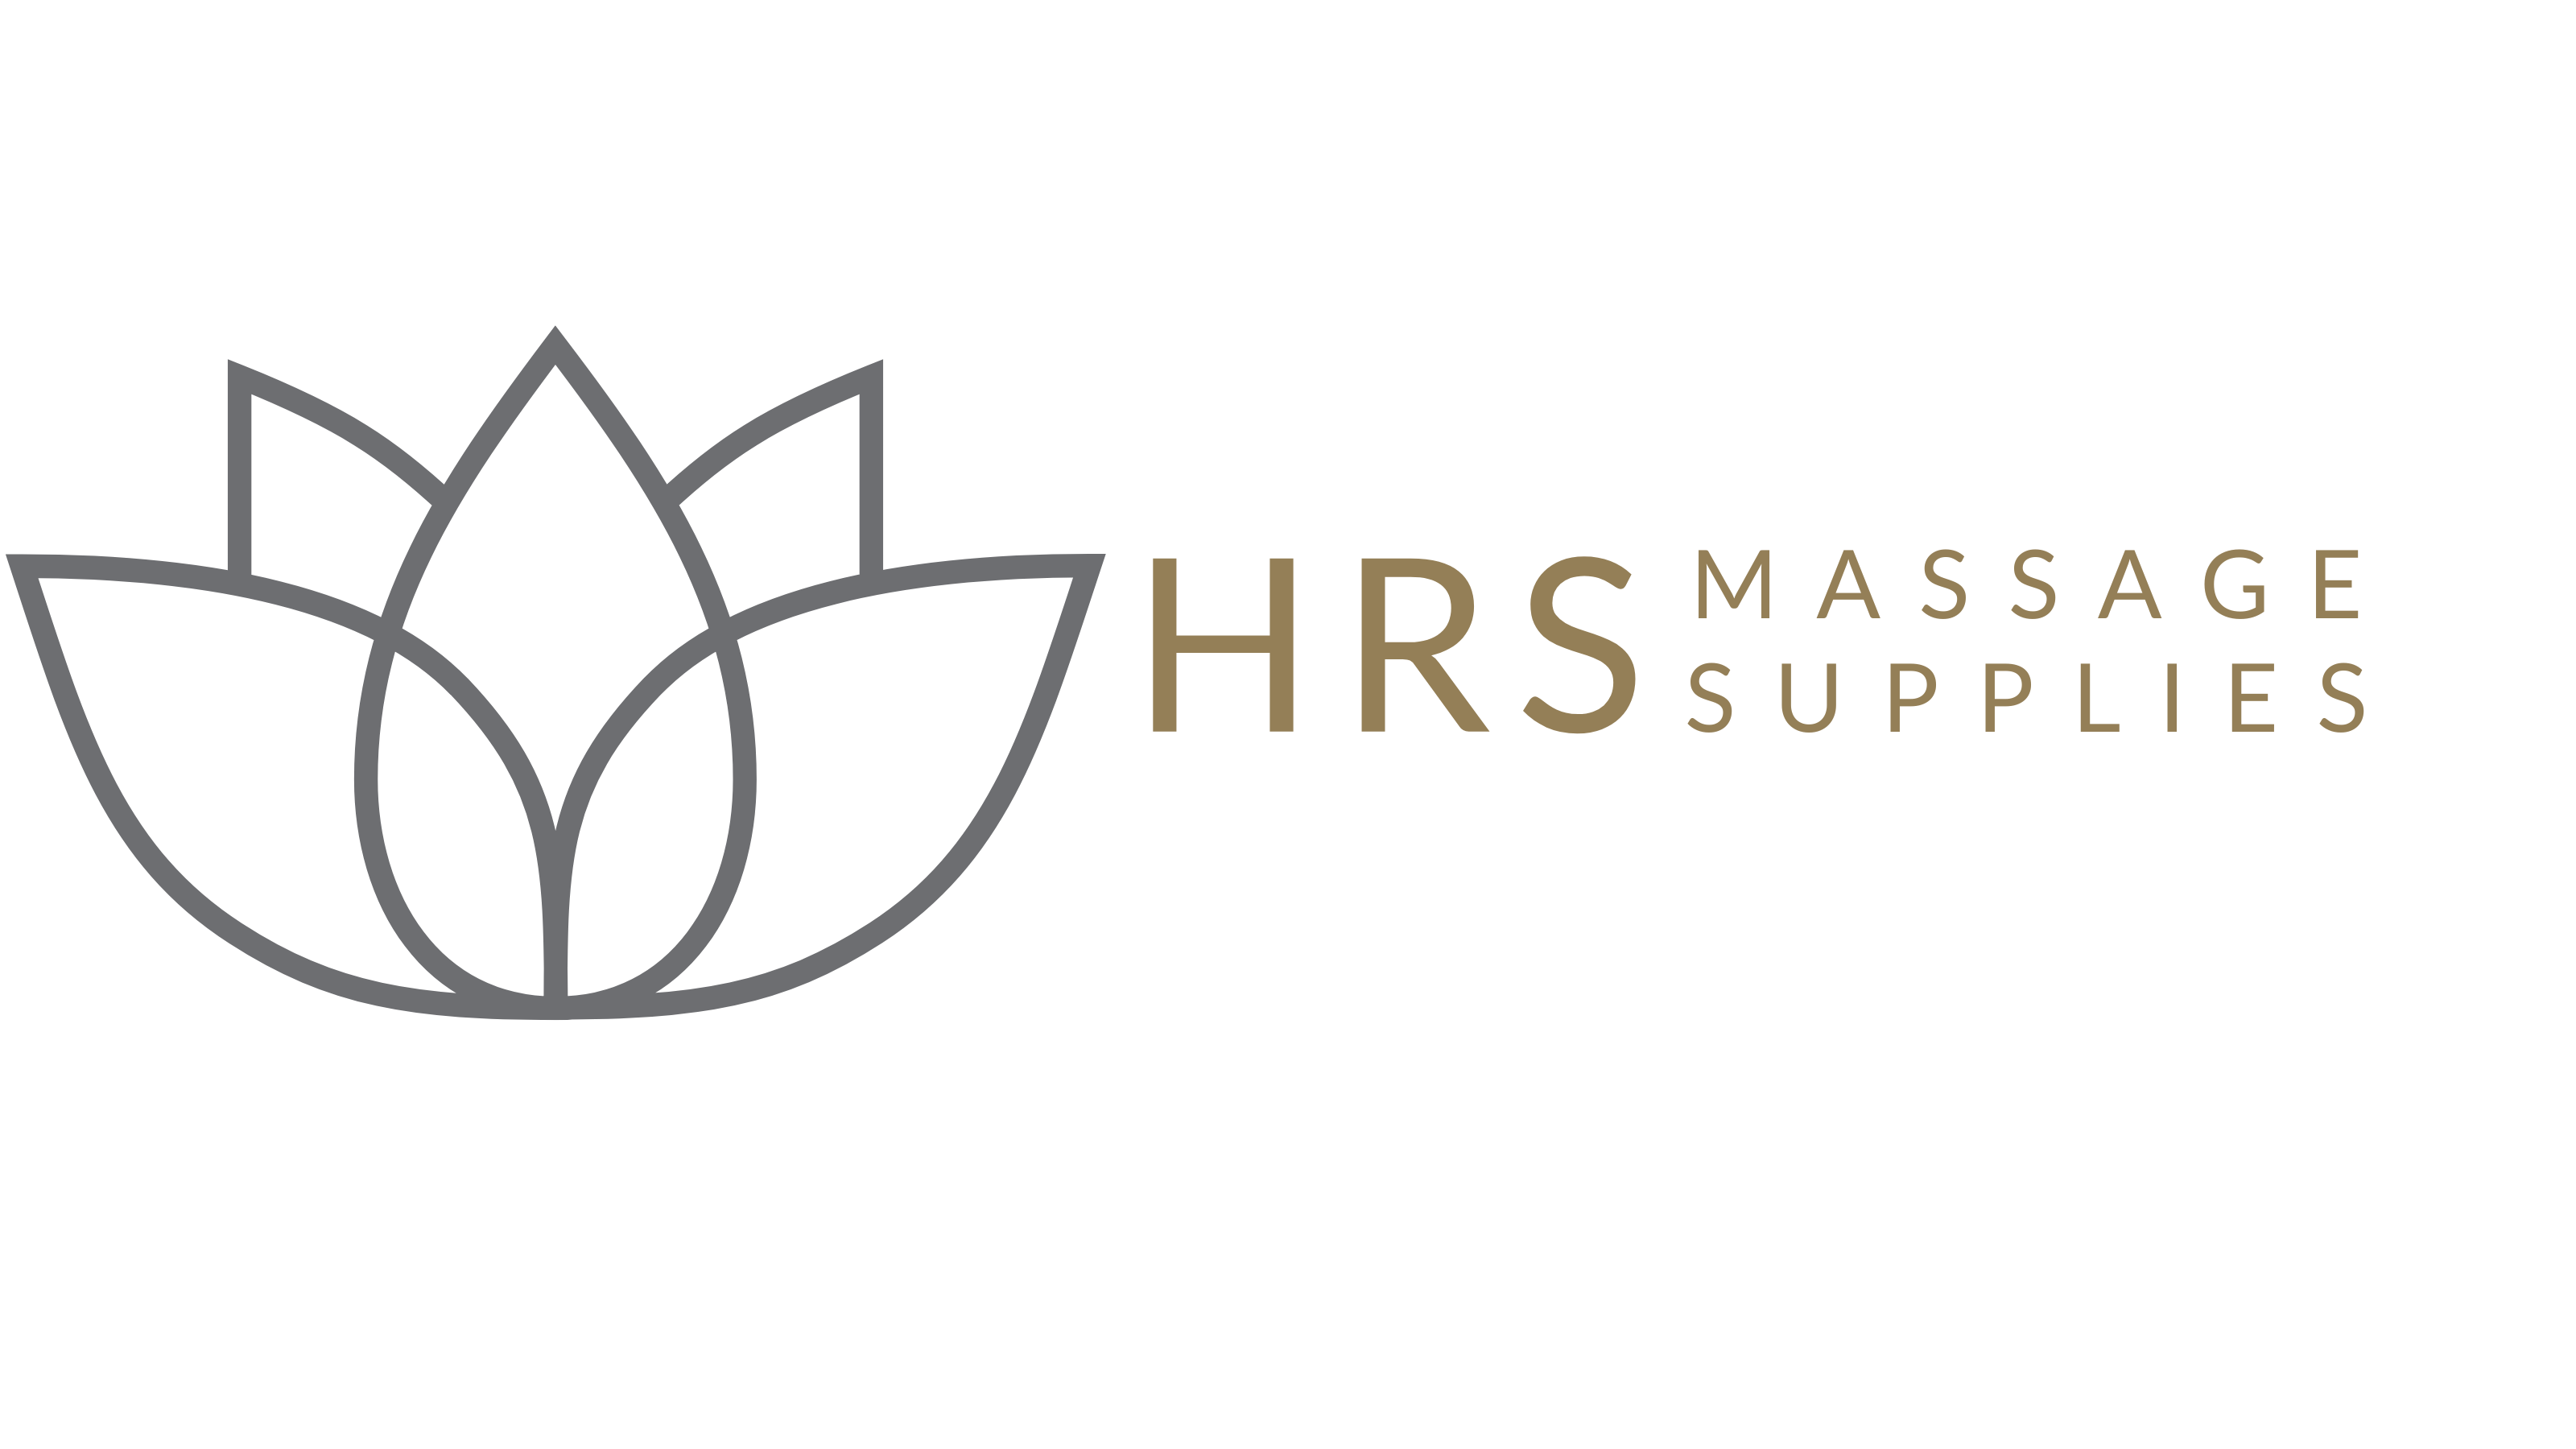 HRS Massage Supplies